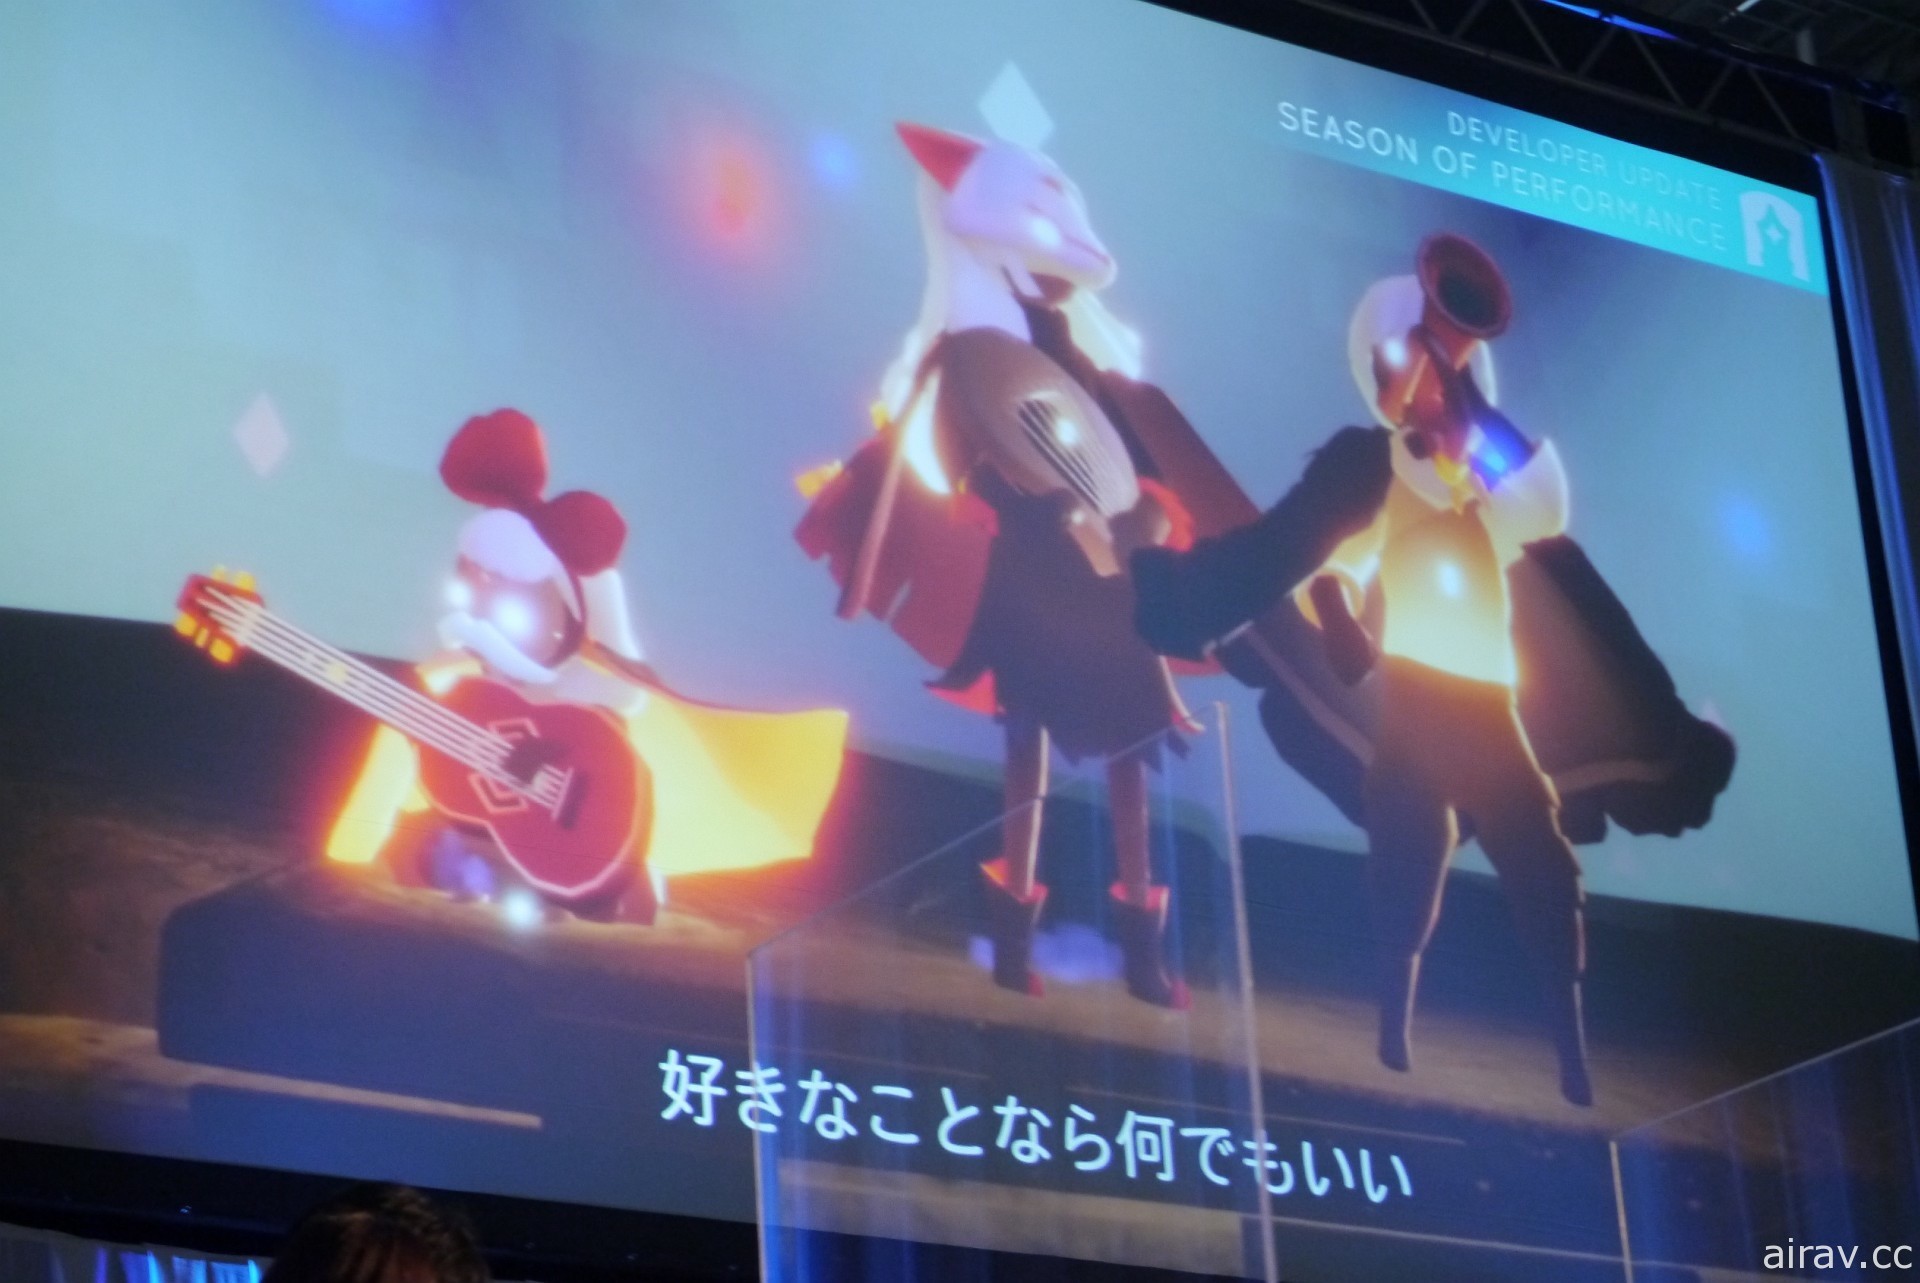 《Sky 光・遇》AnimeJapan 2022 舞台活动报导 声优梶裕贵被任命为特别支援者